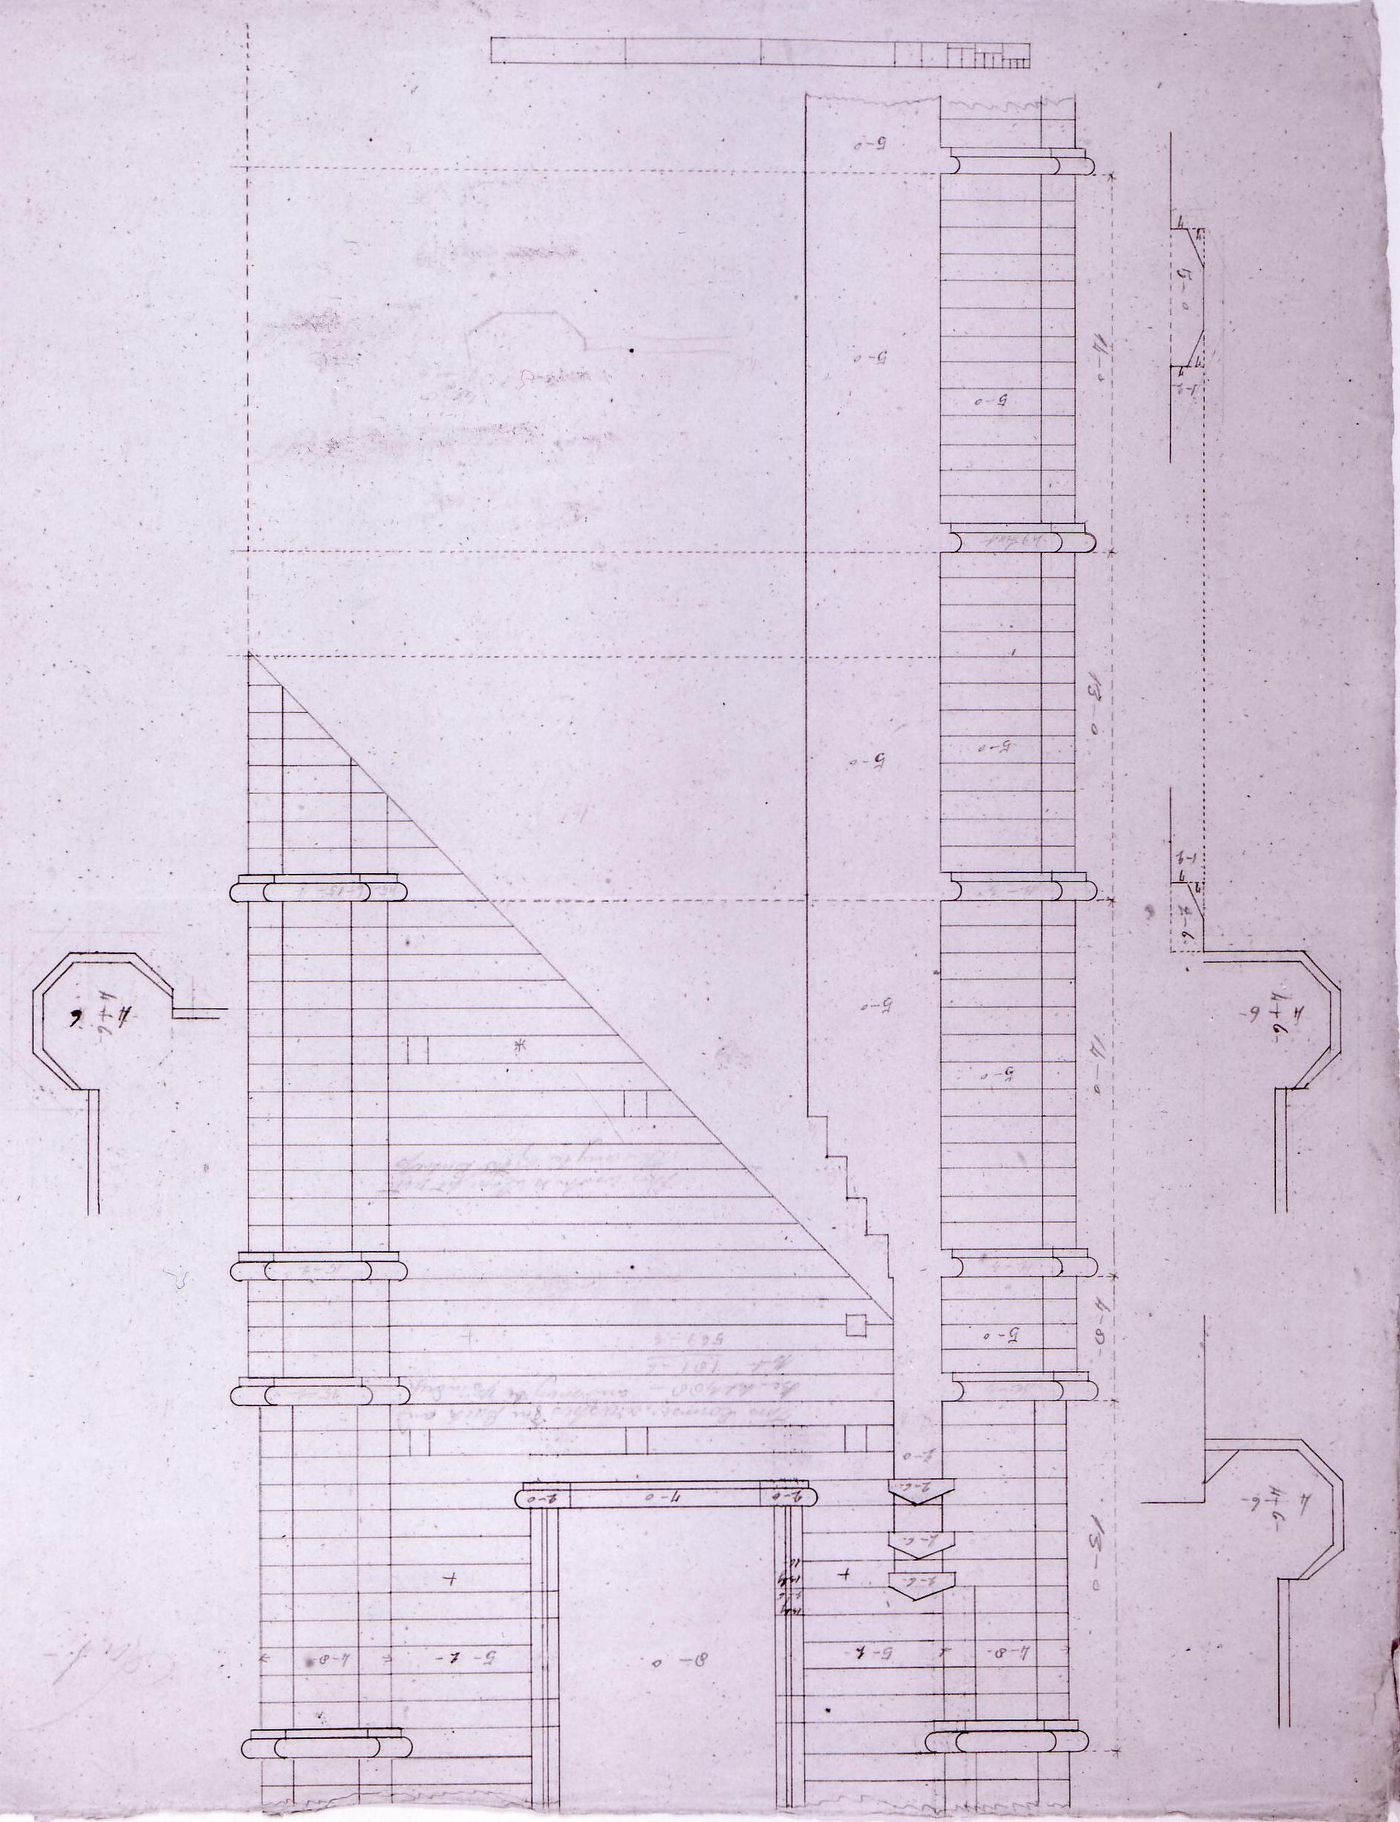 Plans and elevation for a tower for Notre-Dame de Montréal